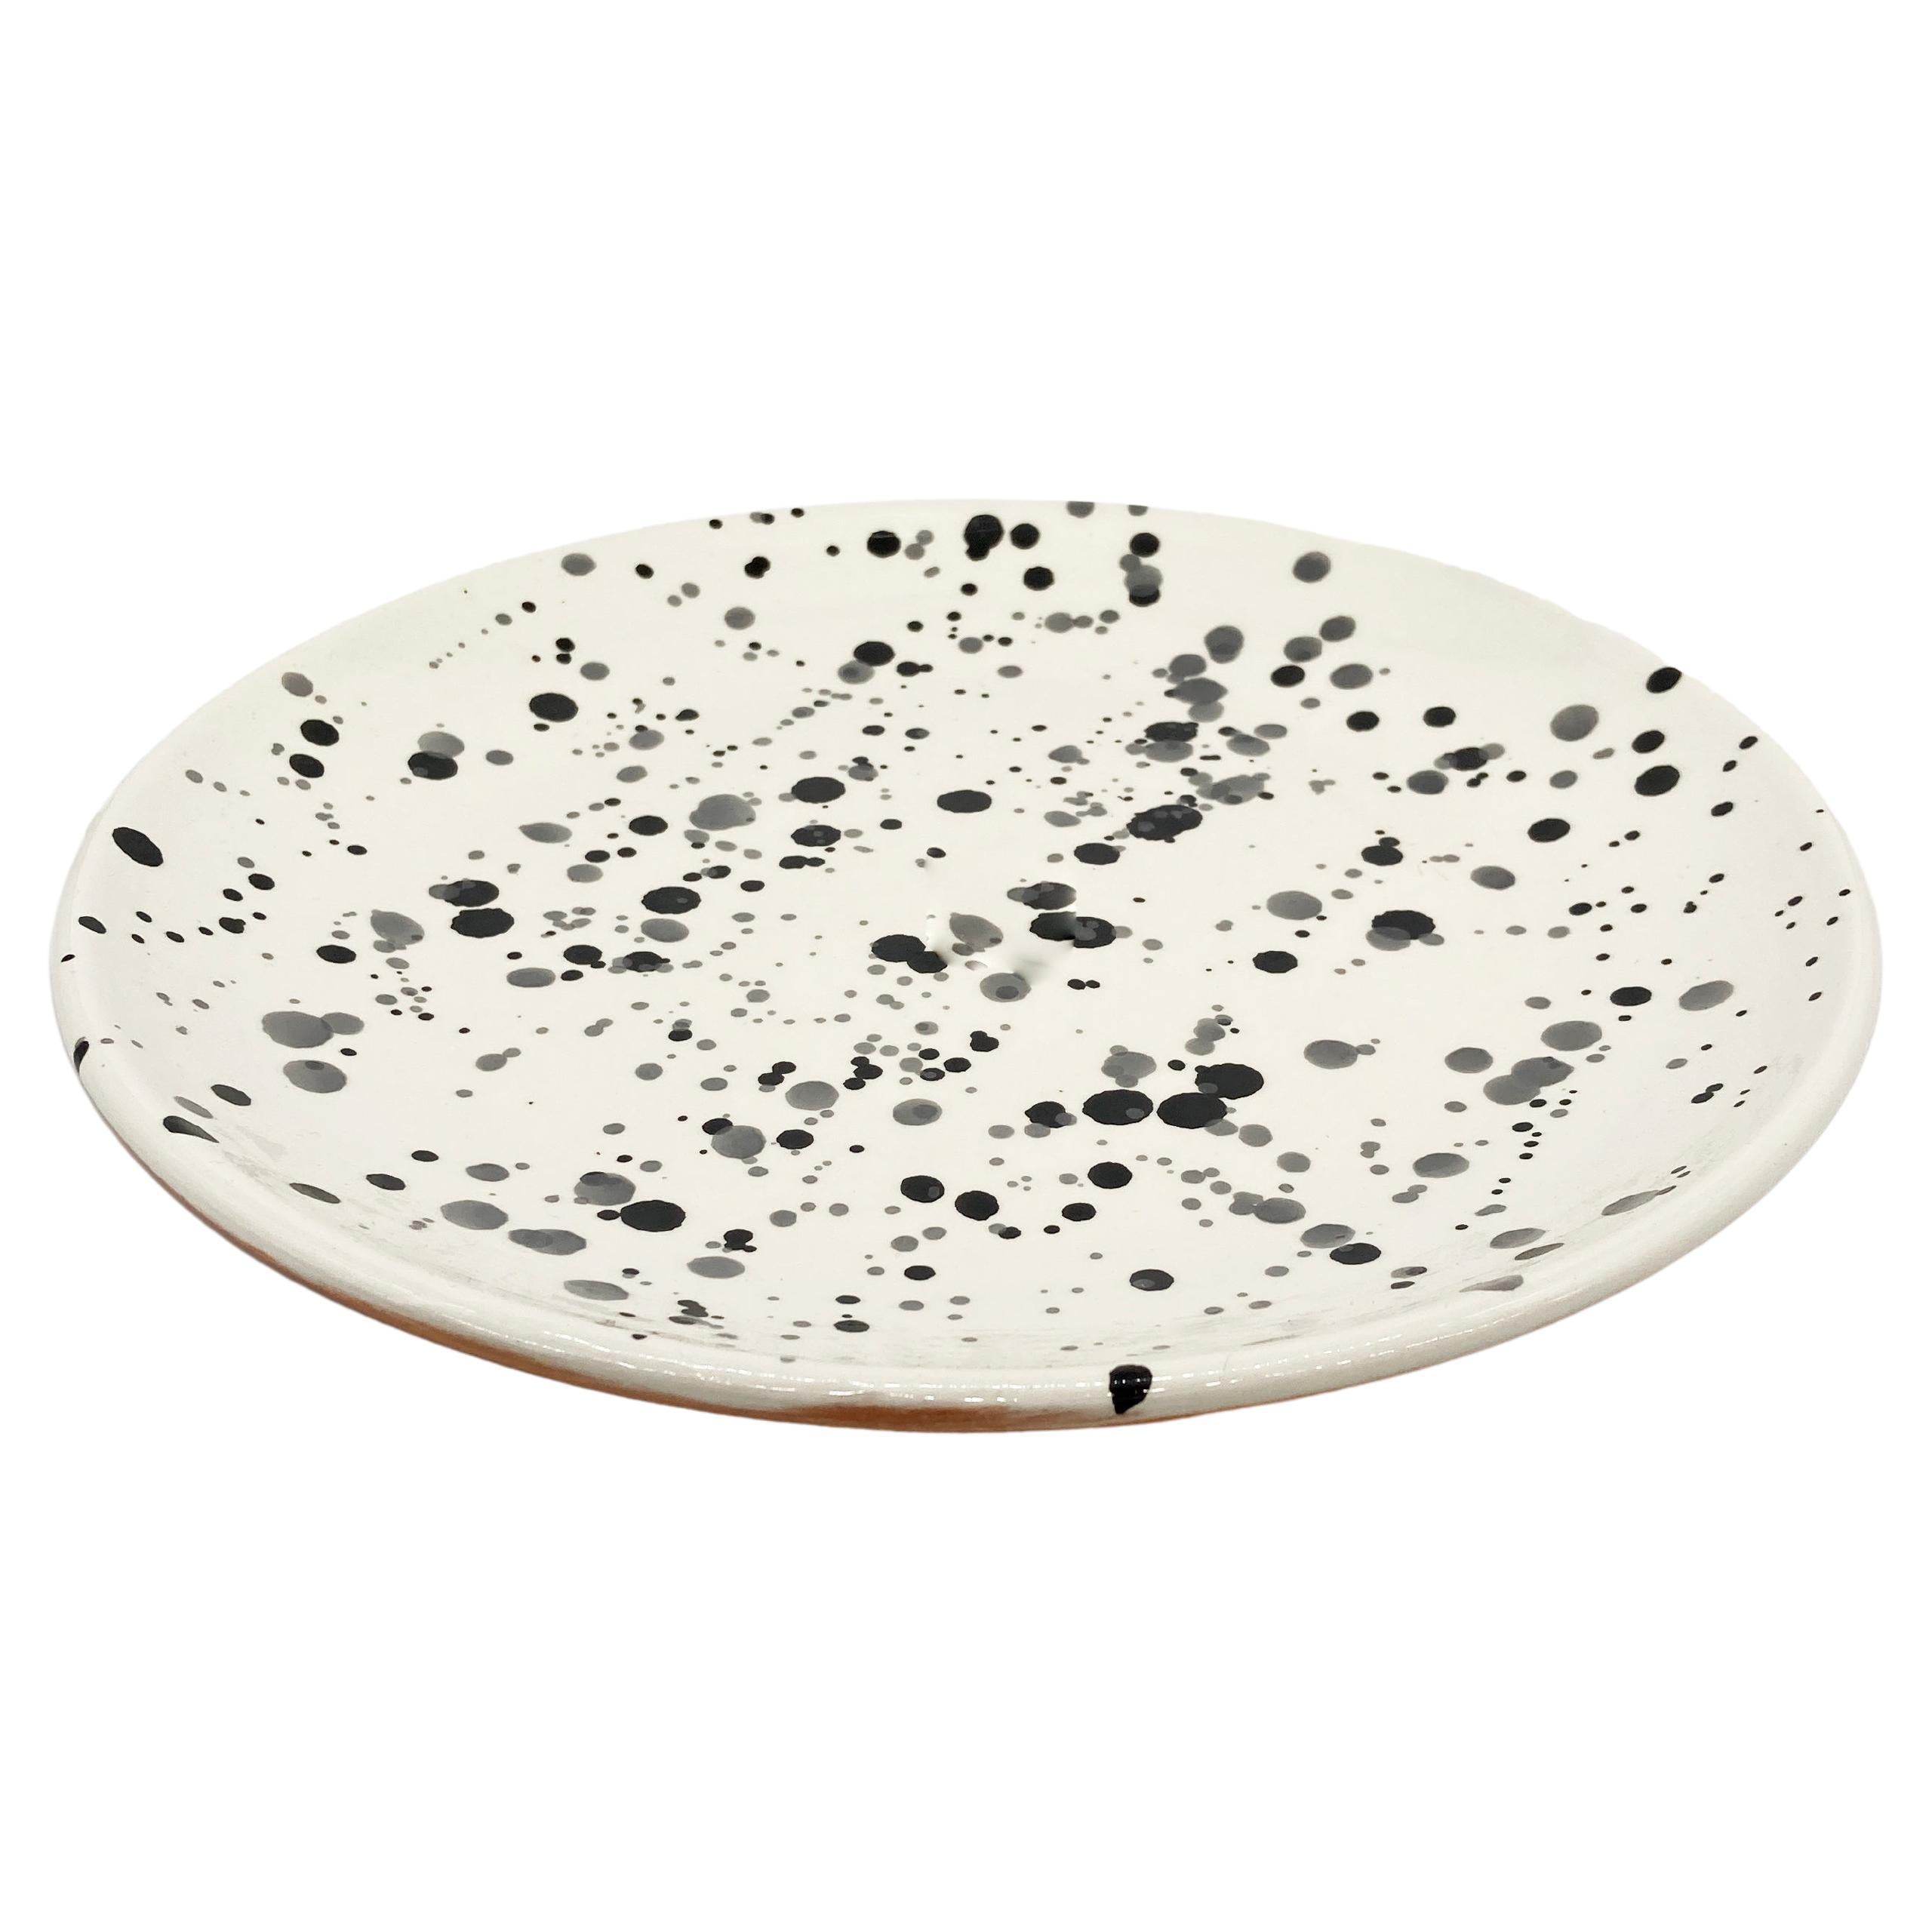 Handmade Black and White Terra Cotta Dot Pattern Dinner Plates, in Stock